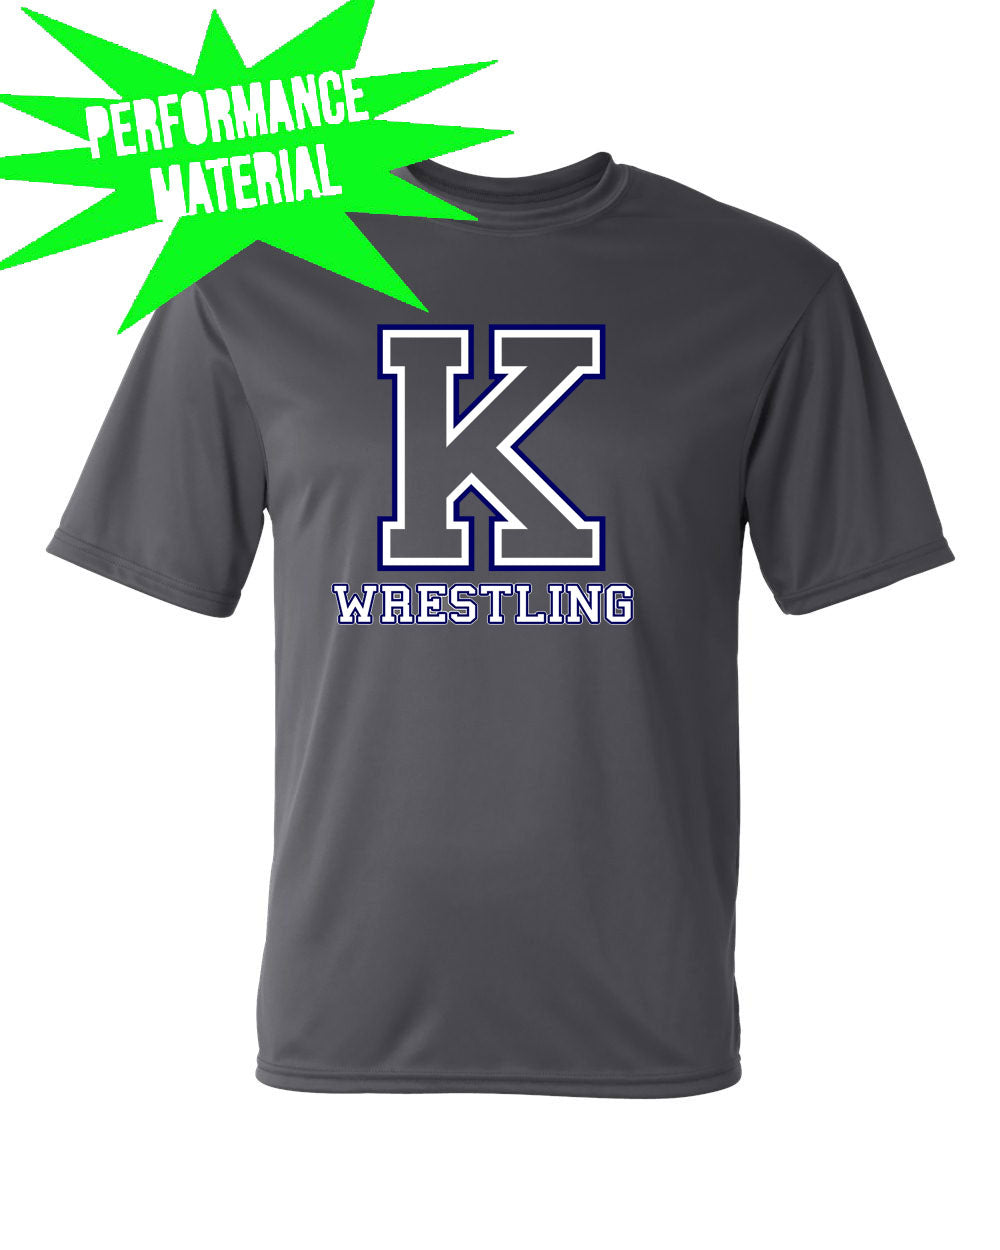 Kittatinny Wrestling Performance Material T-Shirt Design 7